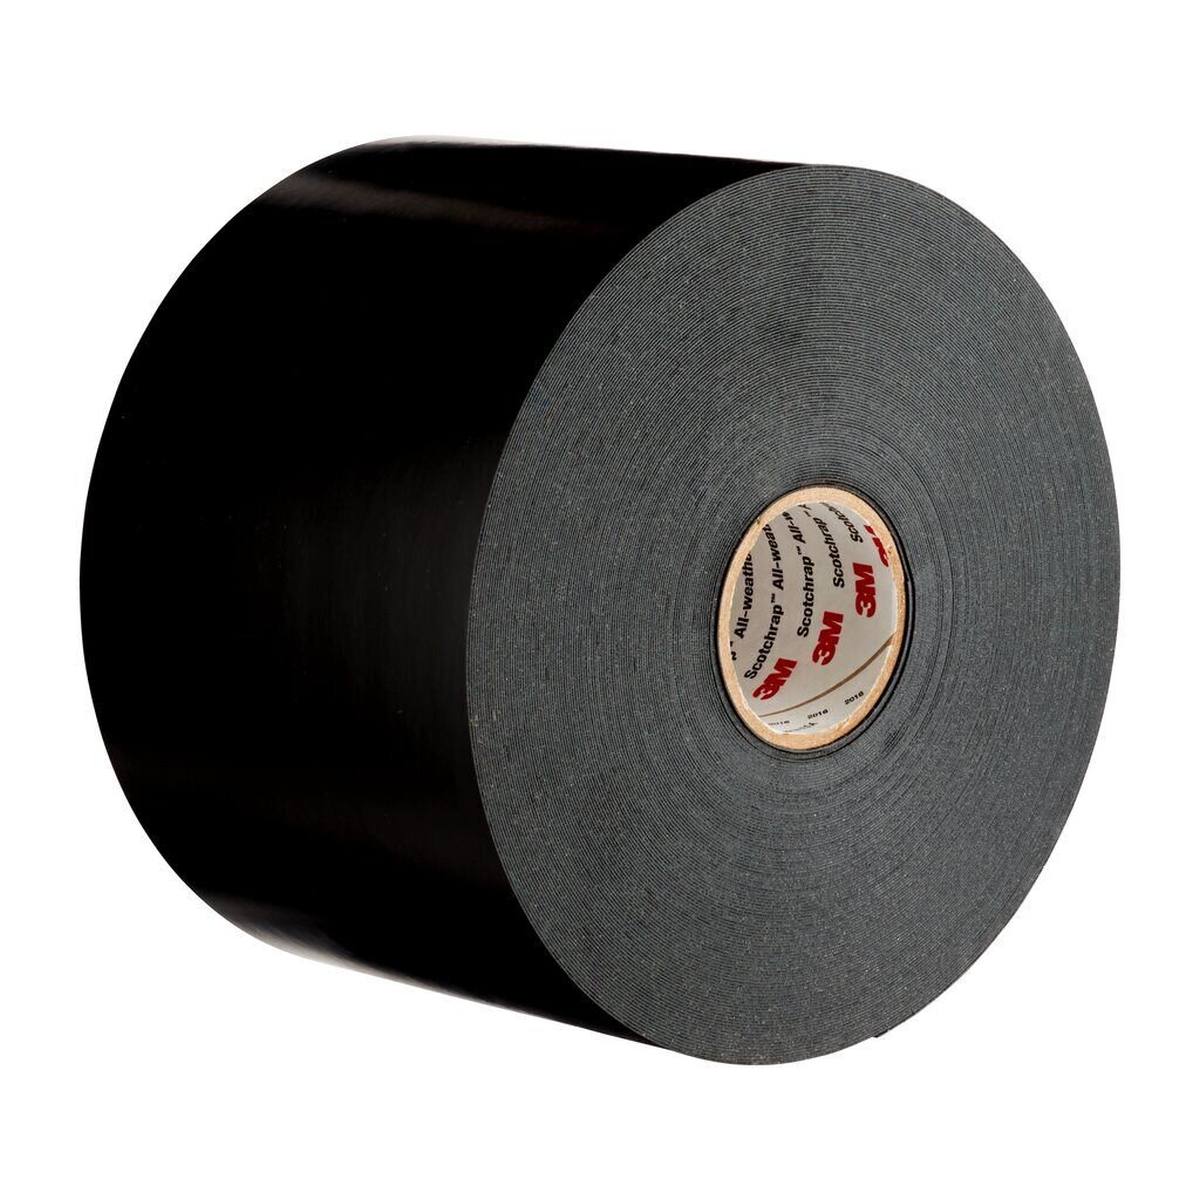 3M Scotchrap 51 corrosiewerende tape, zwart, 100 mm x 30 m, 0,5 mm